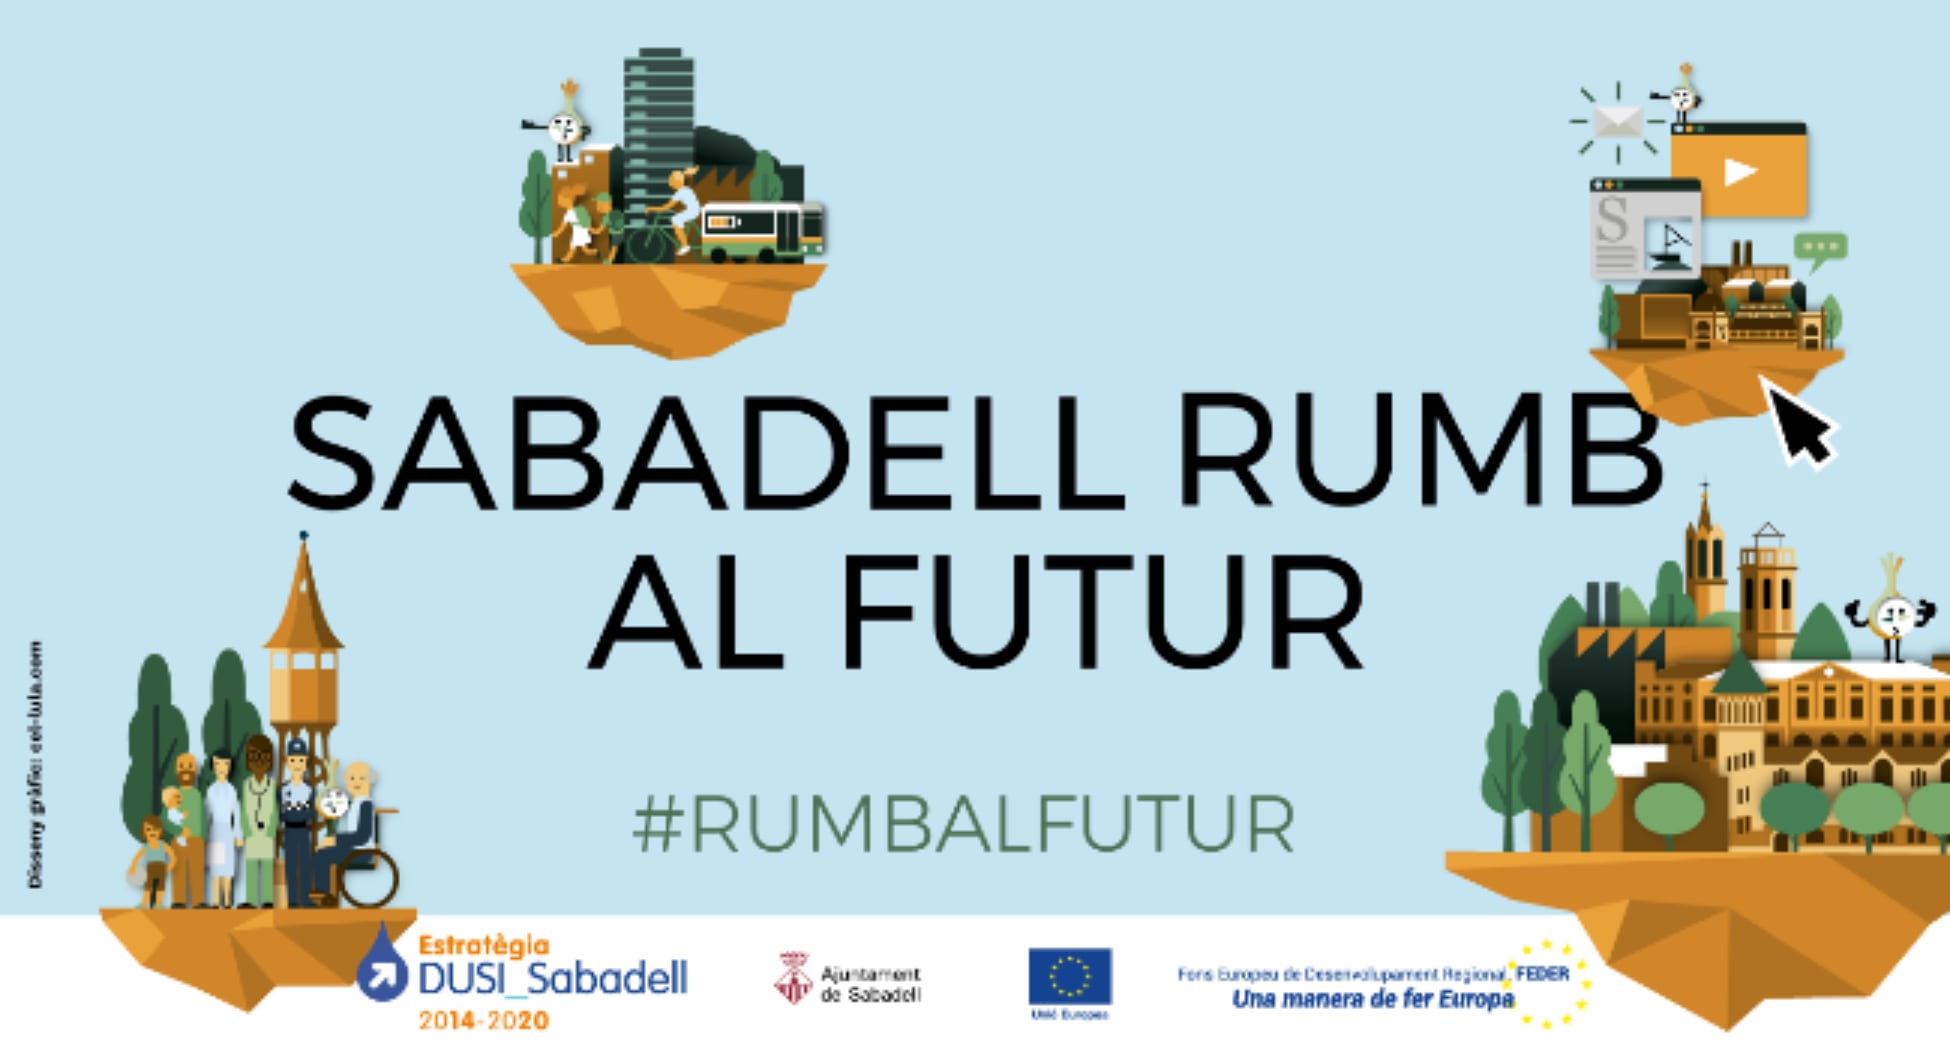 La campanya “Sabadell rumb al futur” ressalta cap a on va la ciutat i com els fons europeus han contribuït a avançar en aquest camí els darrers anys